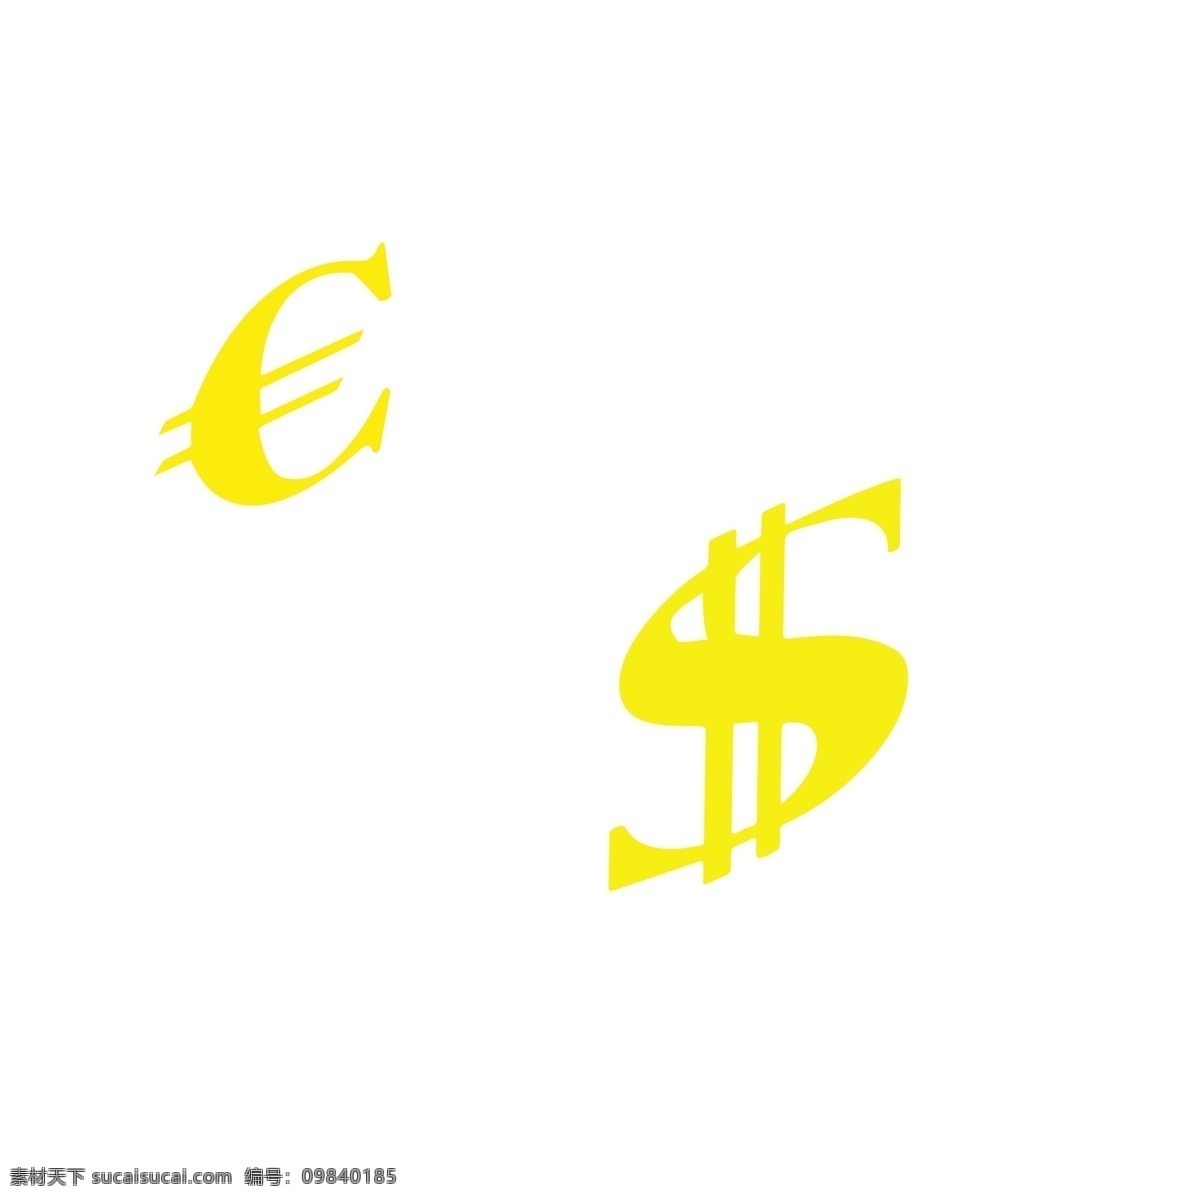 两个 金融 对话框 符号 商业金融 金融理财 卡通金融 金融插画